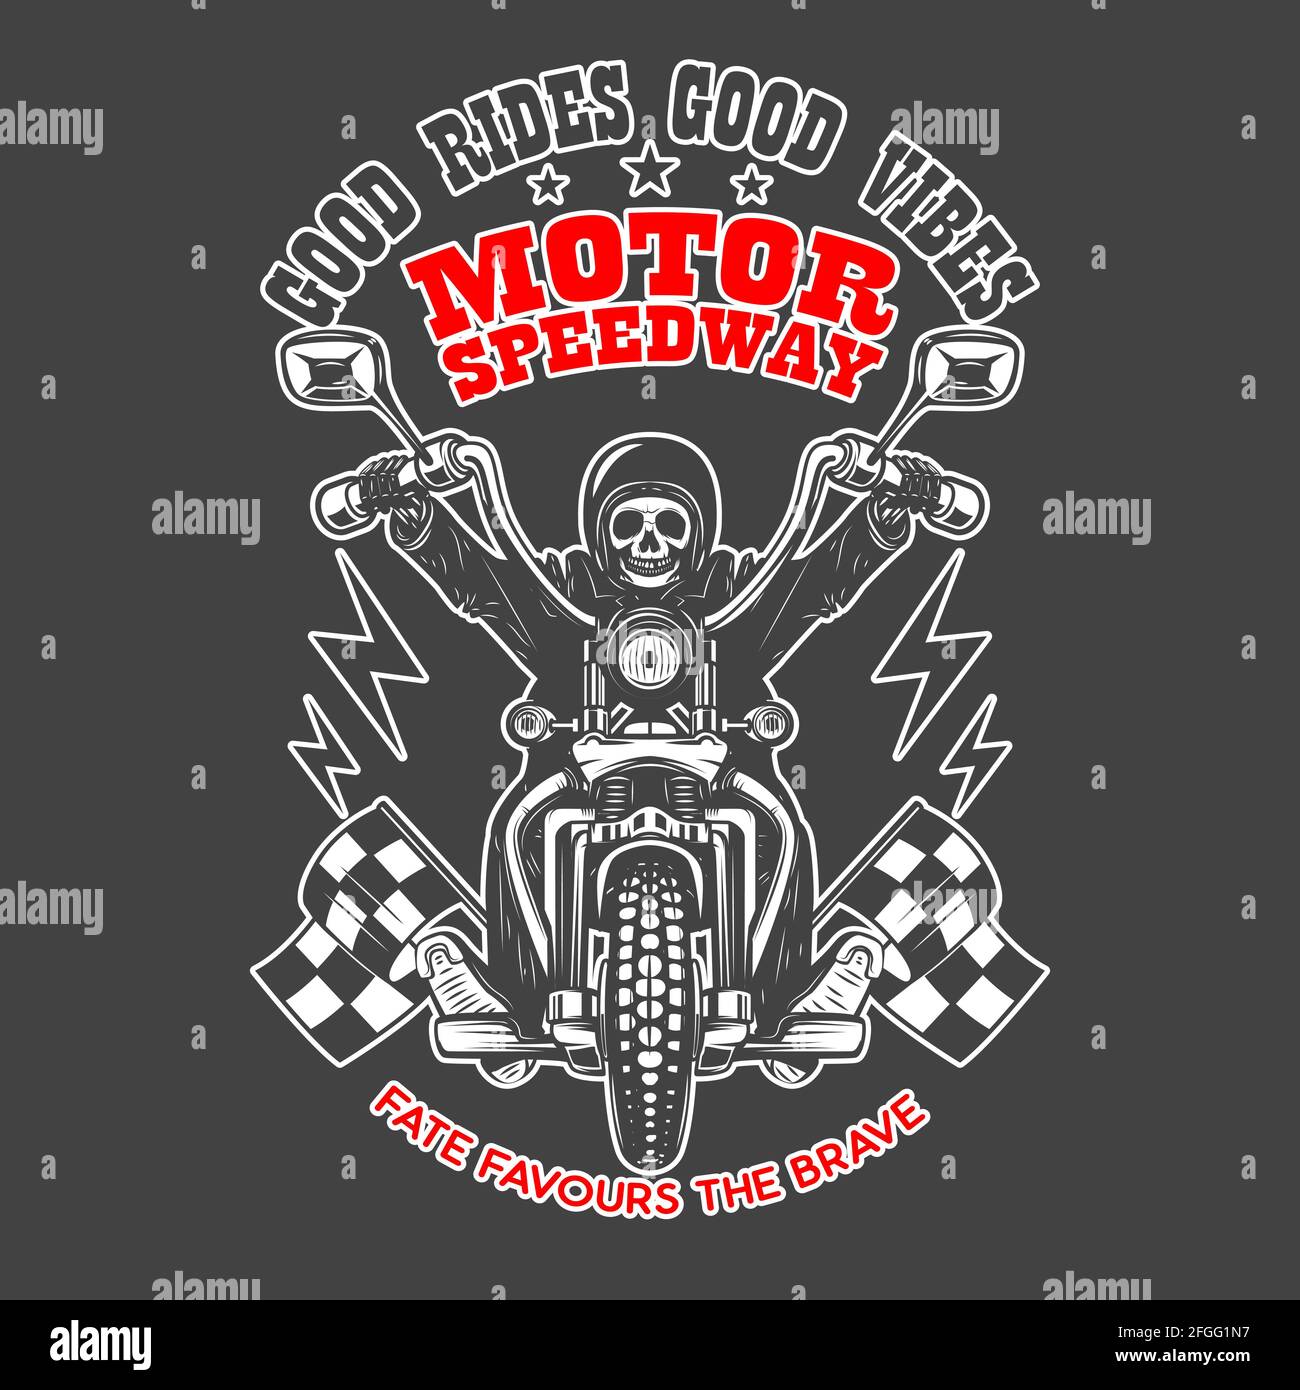 Motor speedway. Emblem template with skeleton on vintage motorcycle. Design element for logo, label, sign, emblem, poster. Vector illustration Stock Vector